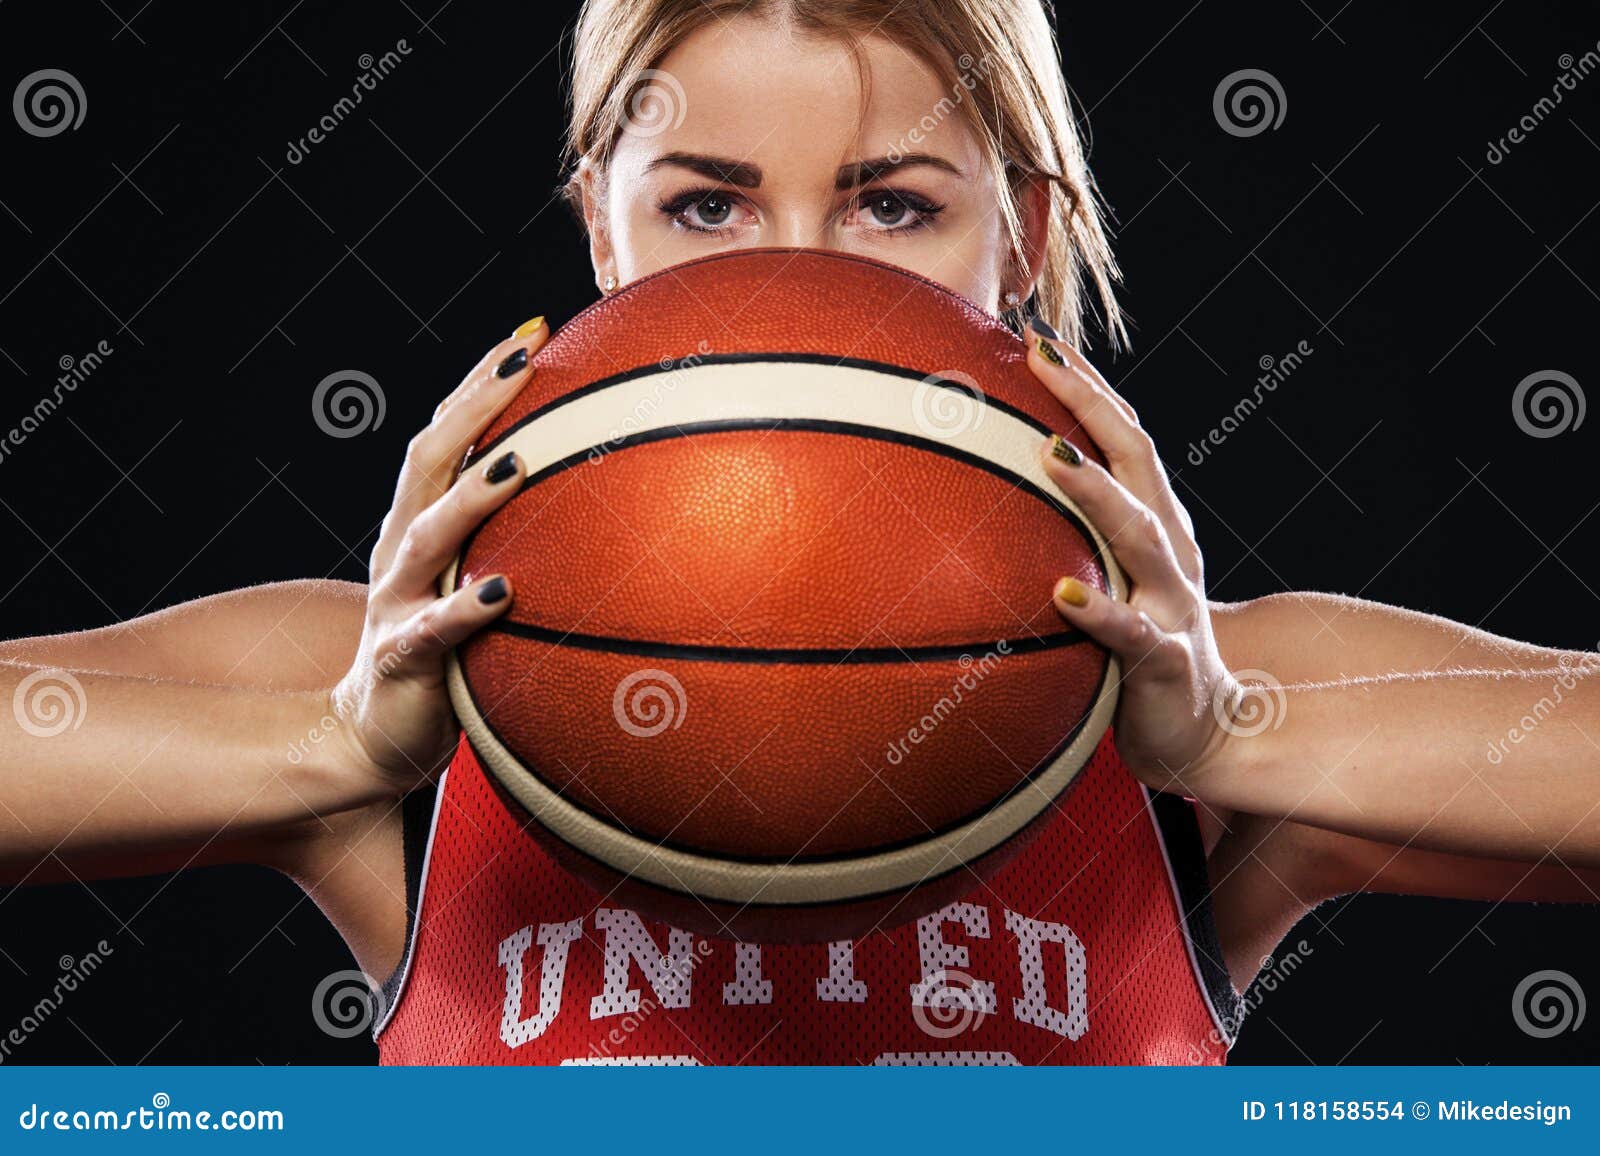 51 Basketball iPhone Wallpapers for Girls  WallpaperSafari